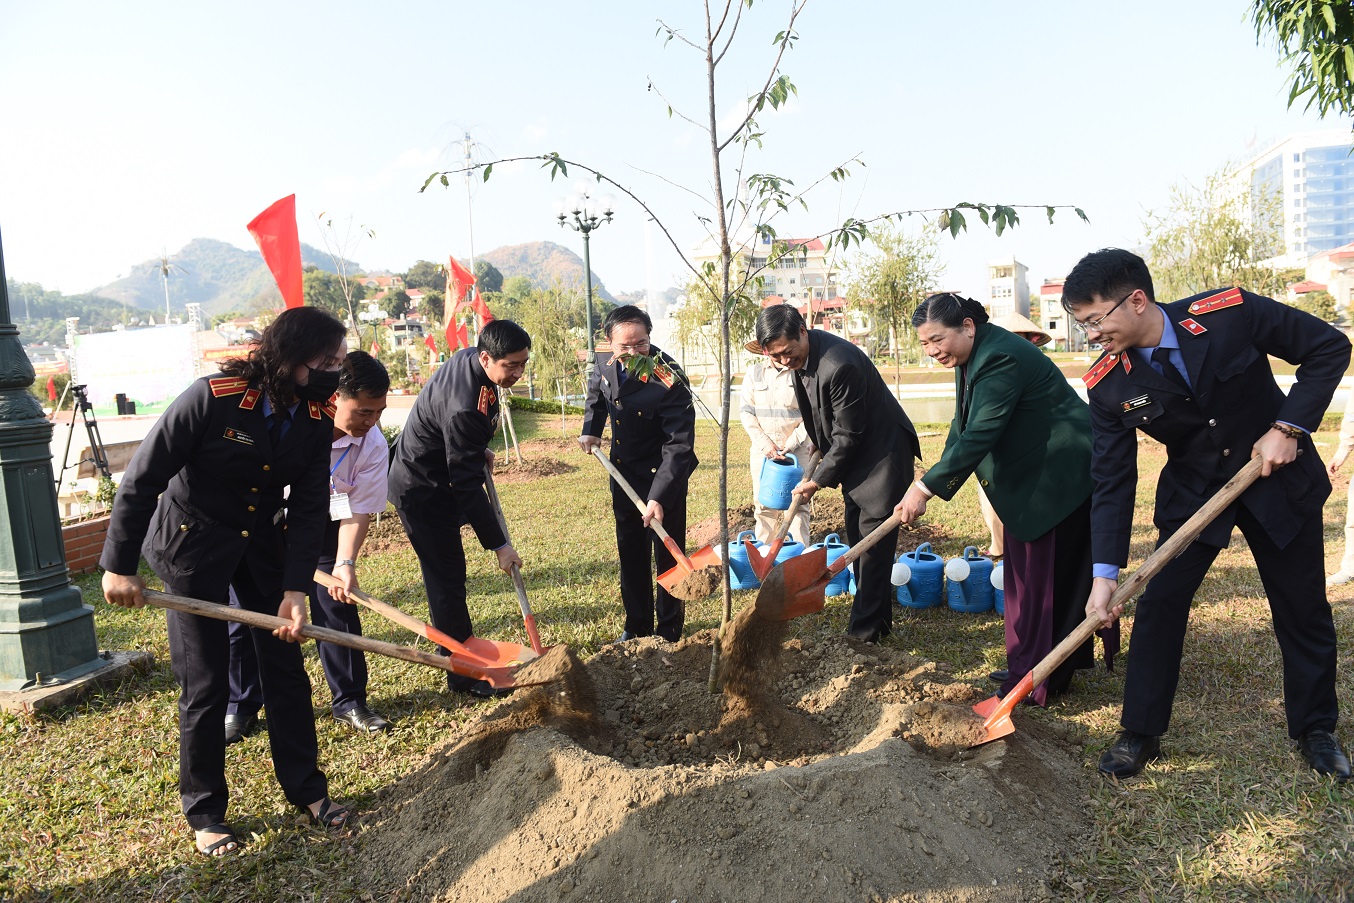 Phó Chủ tịch Thường trực Quốc hội Tòng Thị Phóng và các đại biểu trồng cây Hoa Anh Đào tại khu vực Ao cá Bác Hồ tại Quảng trường Tây Bắc - Ảnh: Quang Khánh